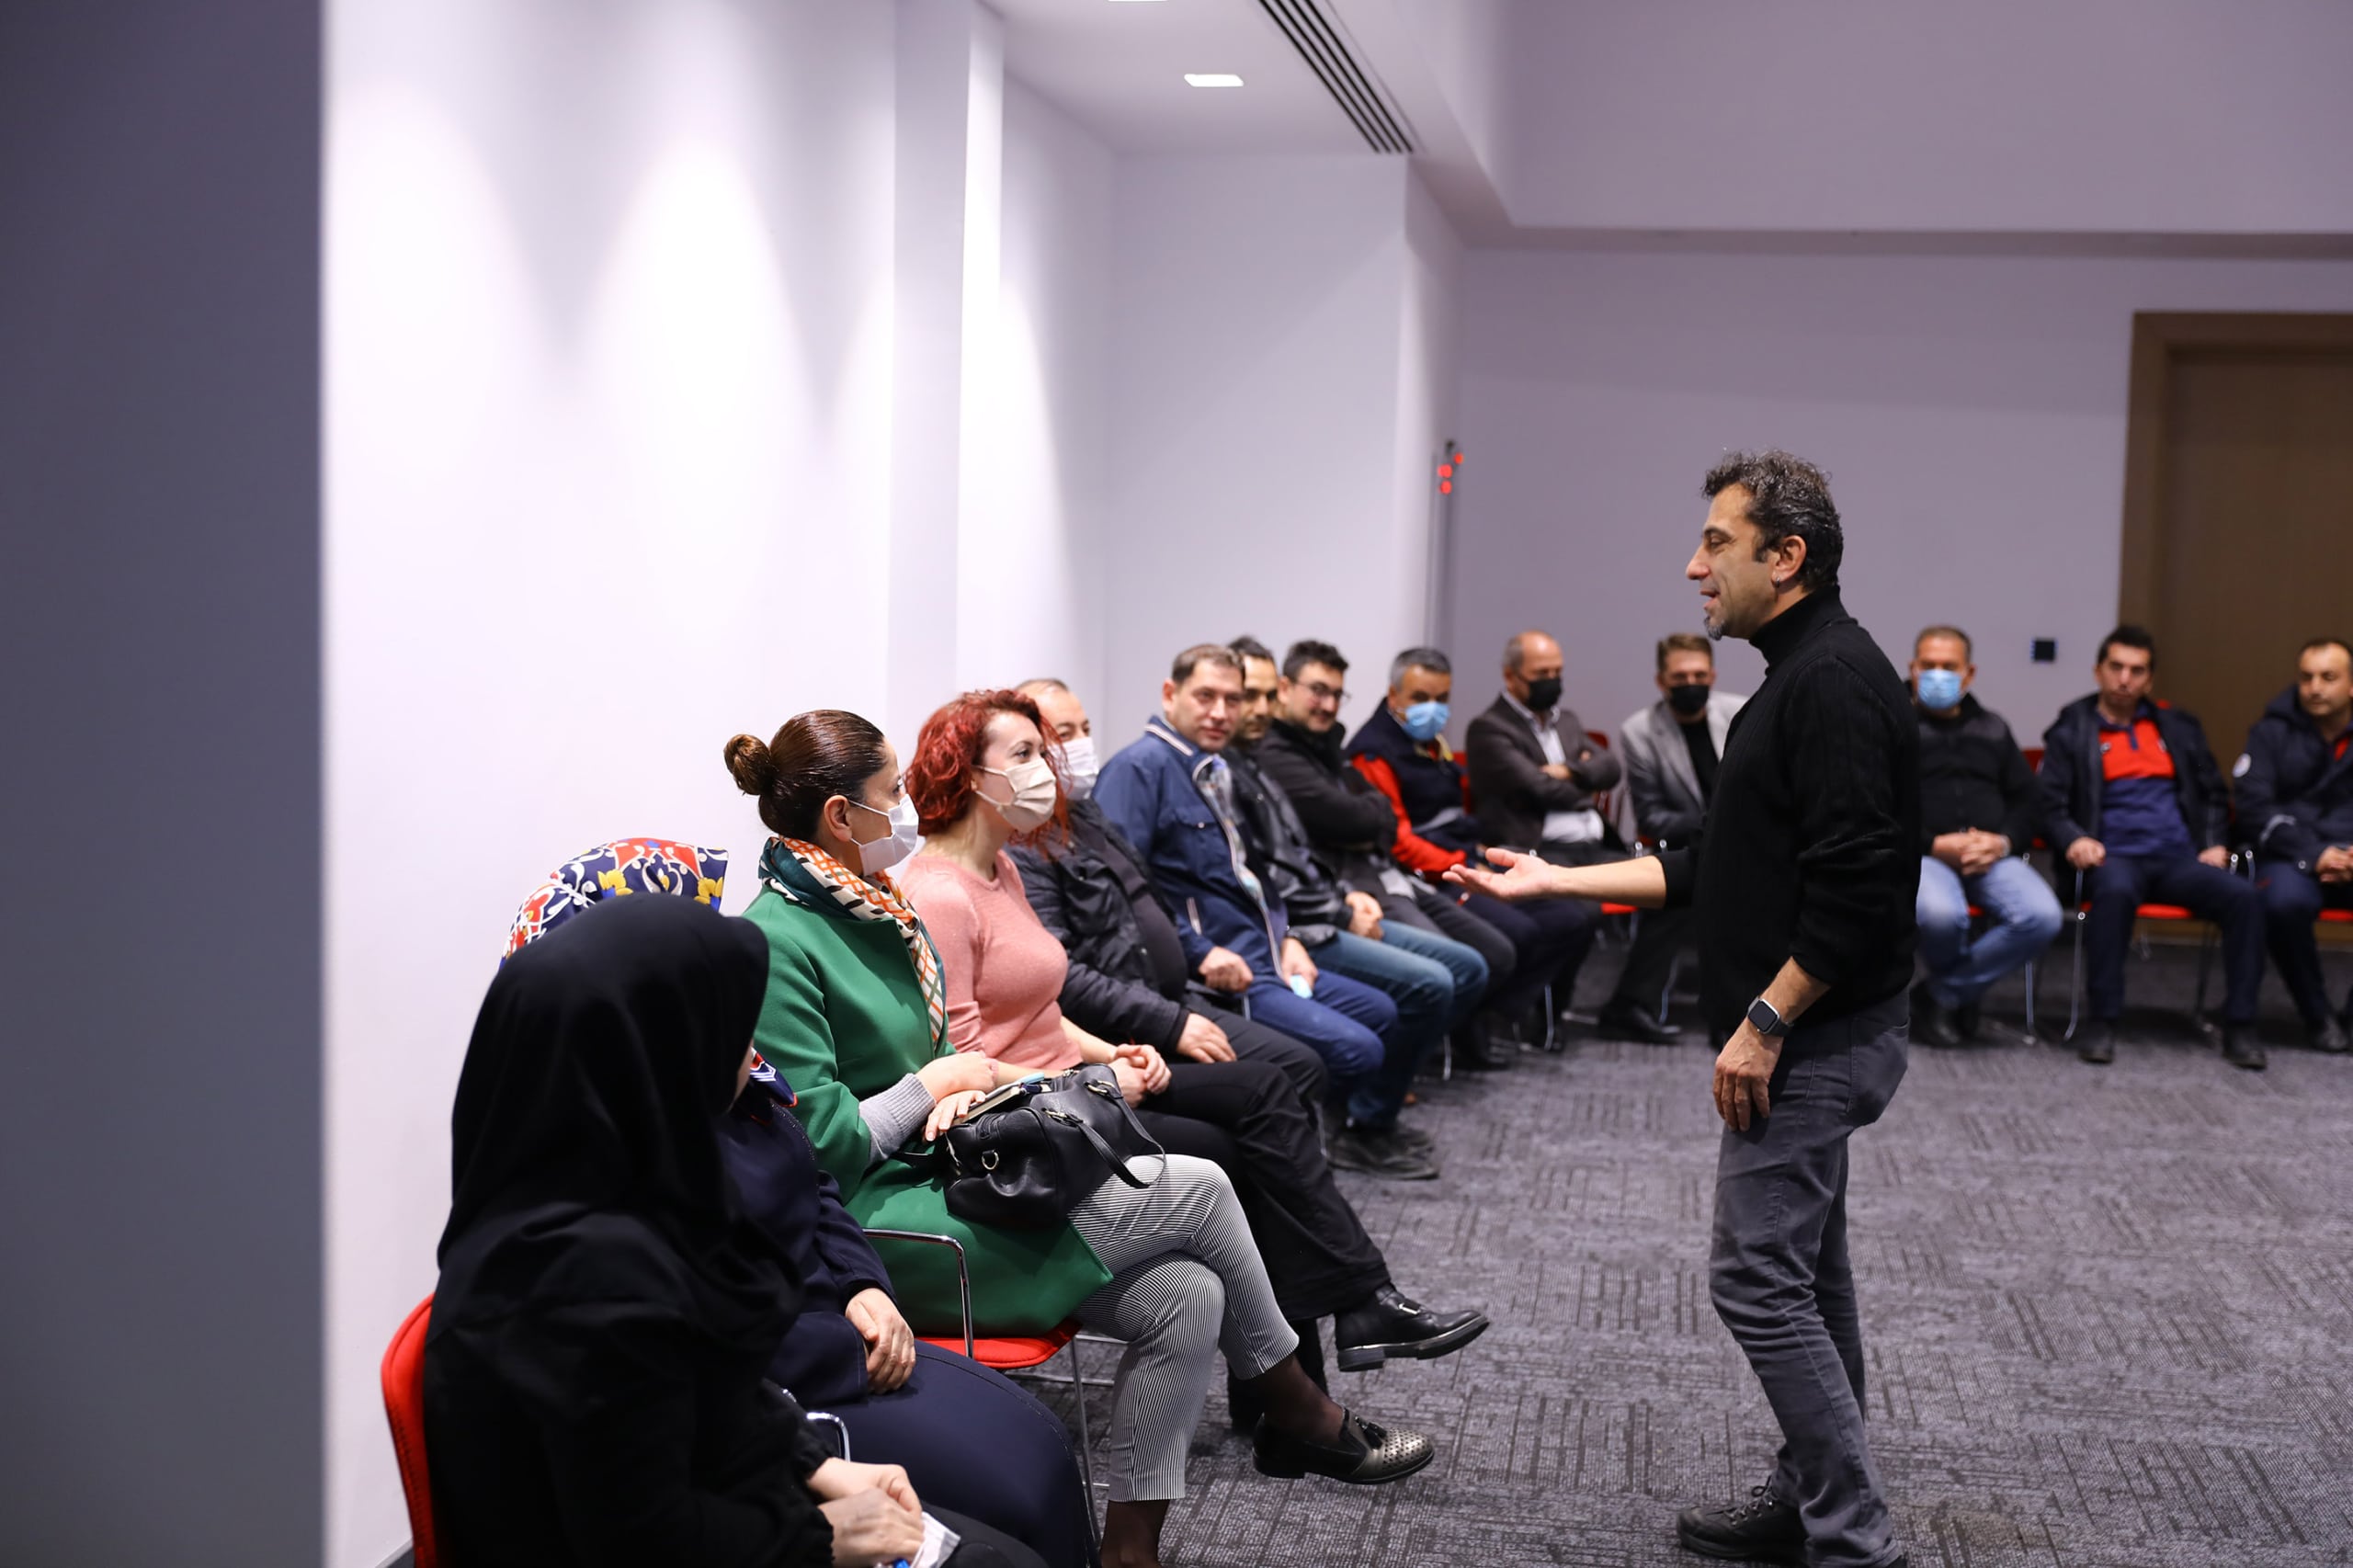 Buyuksehirden motivasyon egitimi 3 scaled - Büyükşehir'den personeline motivasyon eğitimi